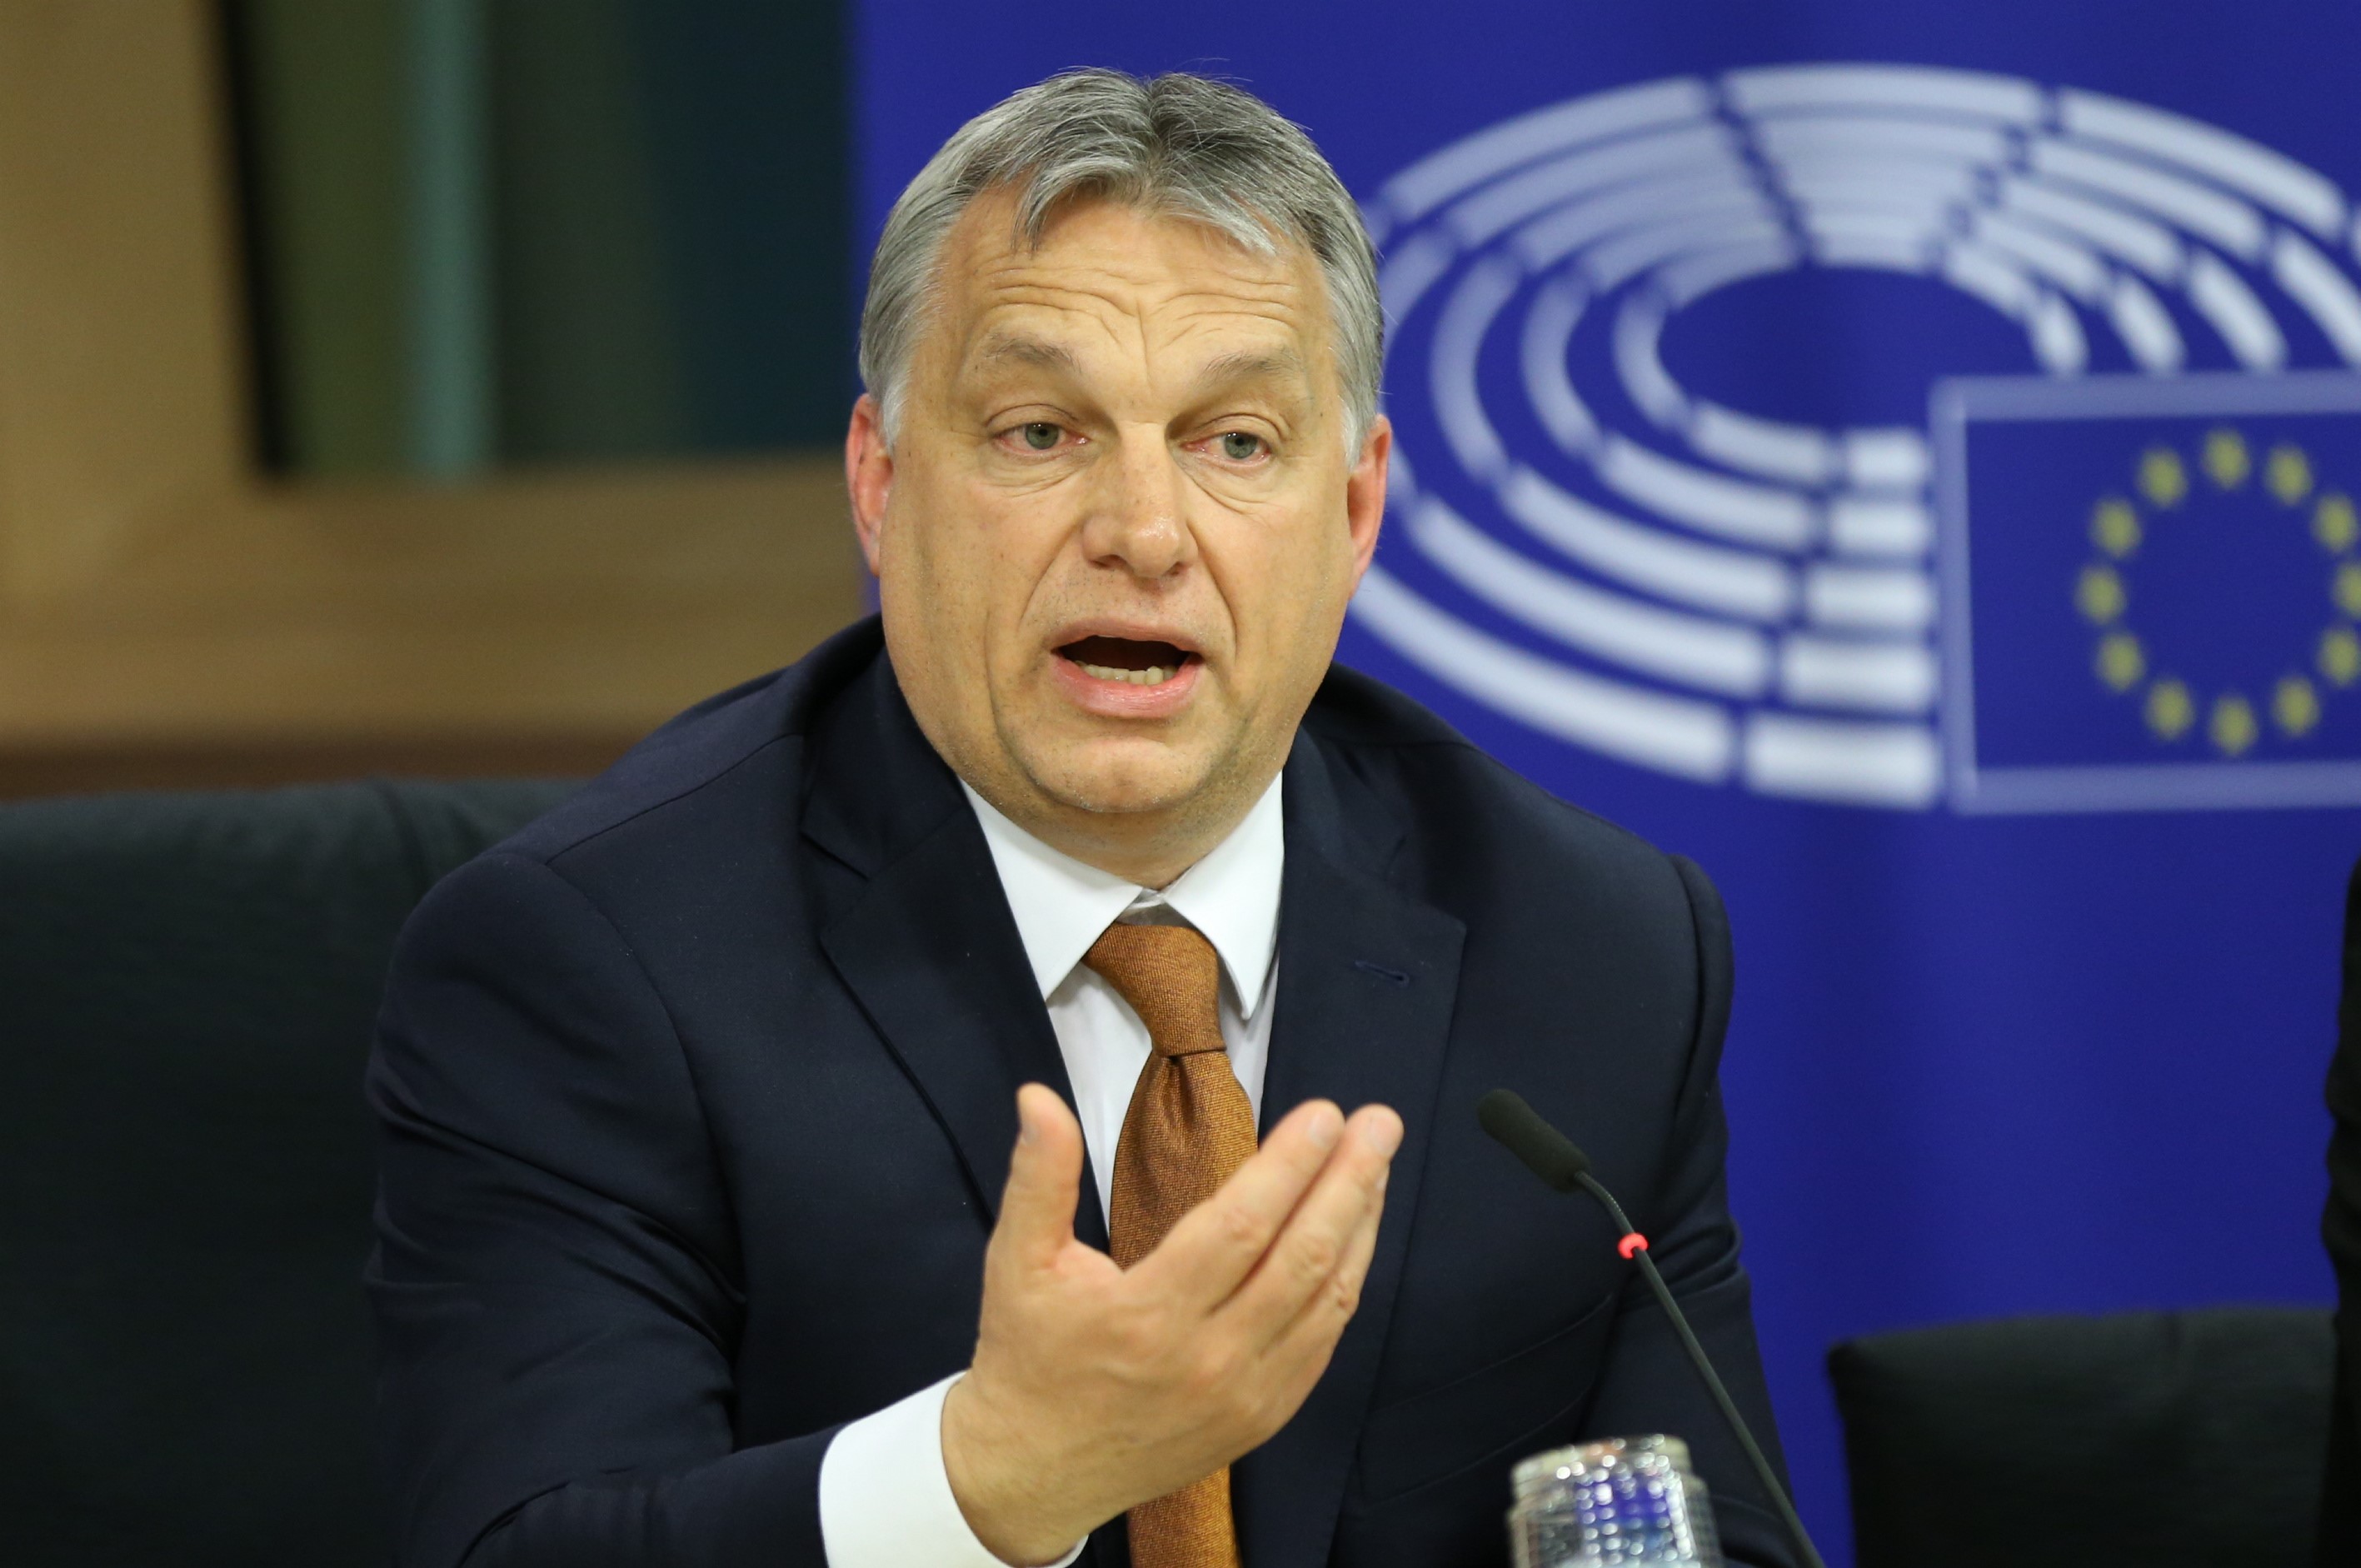 Premierul ungar Viktor Orban îl arată cu degetul pe Soros: ”Soros şi organizaţiile sale ar face orice pentru a înlătura guvernele europene care se opun migraţiei”